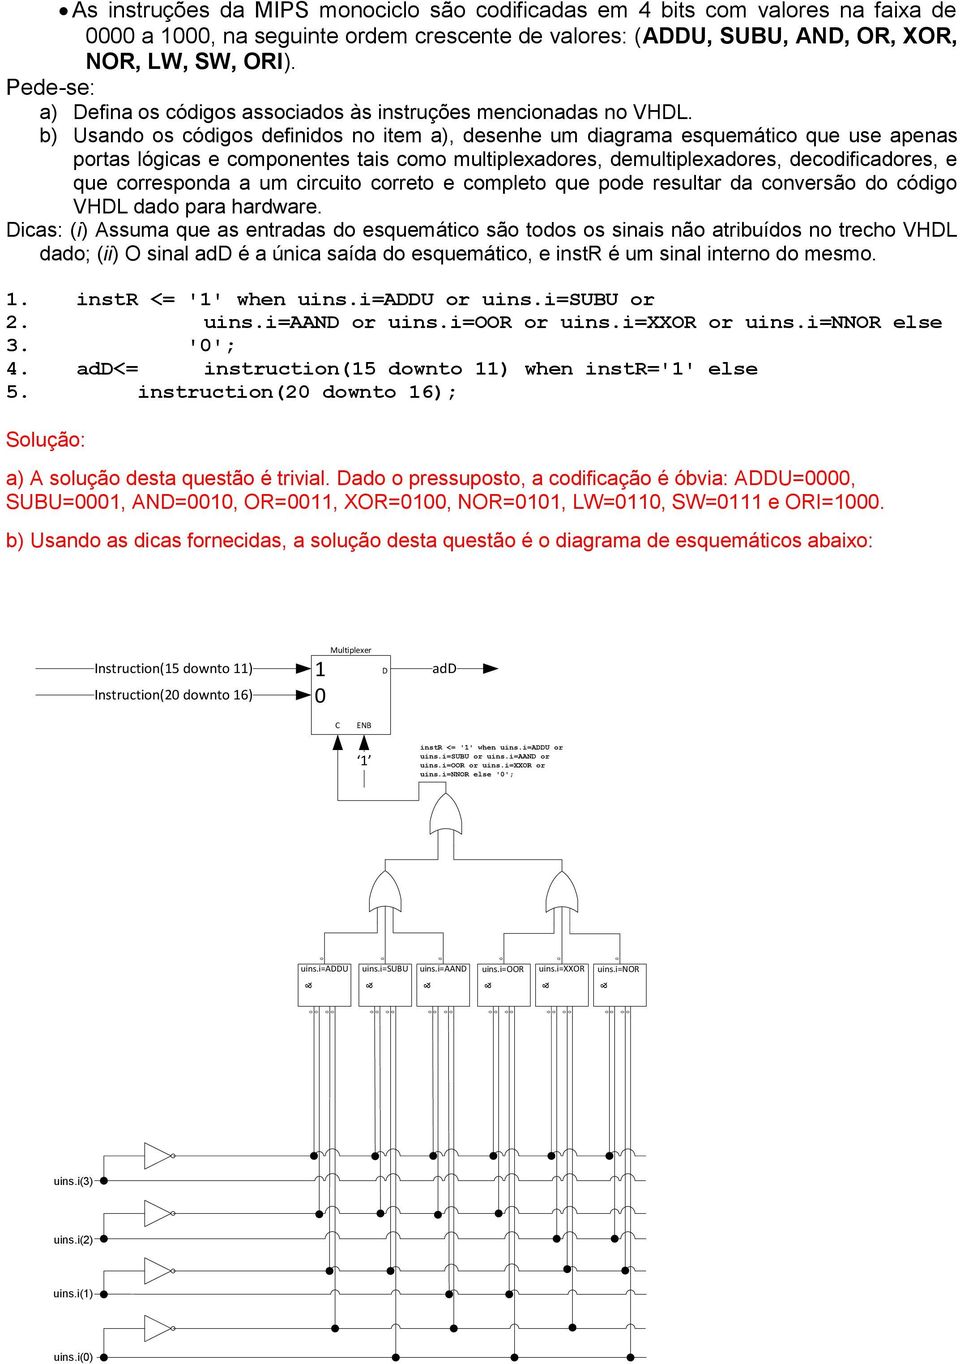 b) sando os códigos finidos no item a), senhe um diagrama esquemático que use apenas portas lógicas e componentes tais como multiplexadores, multiplexadores, codificadores, e que corresponda a um